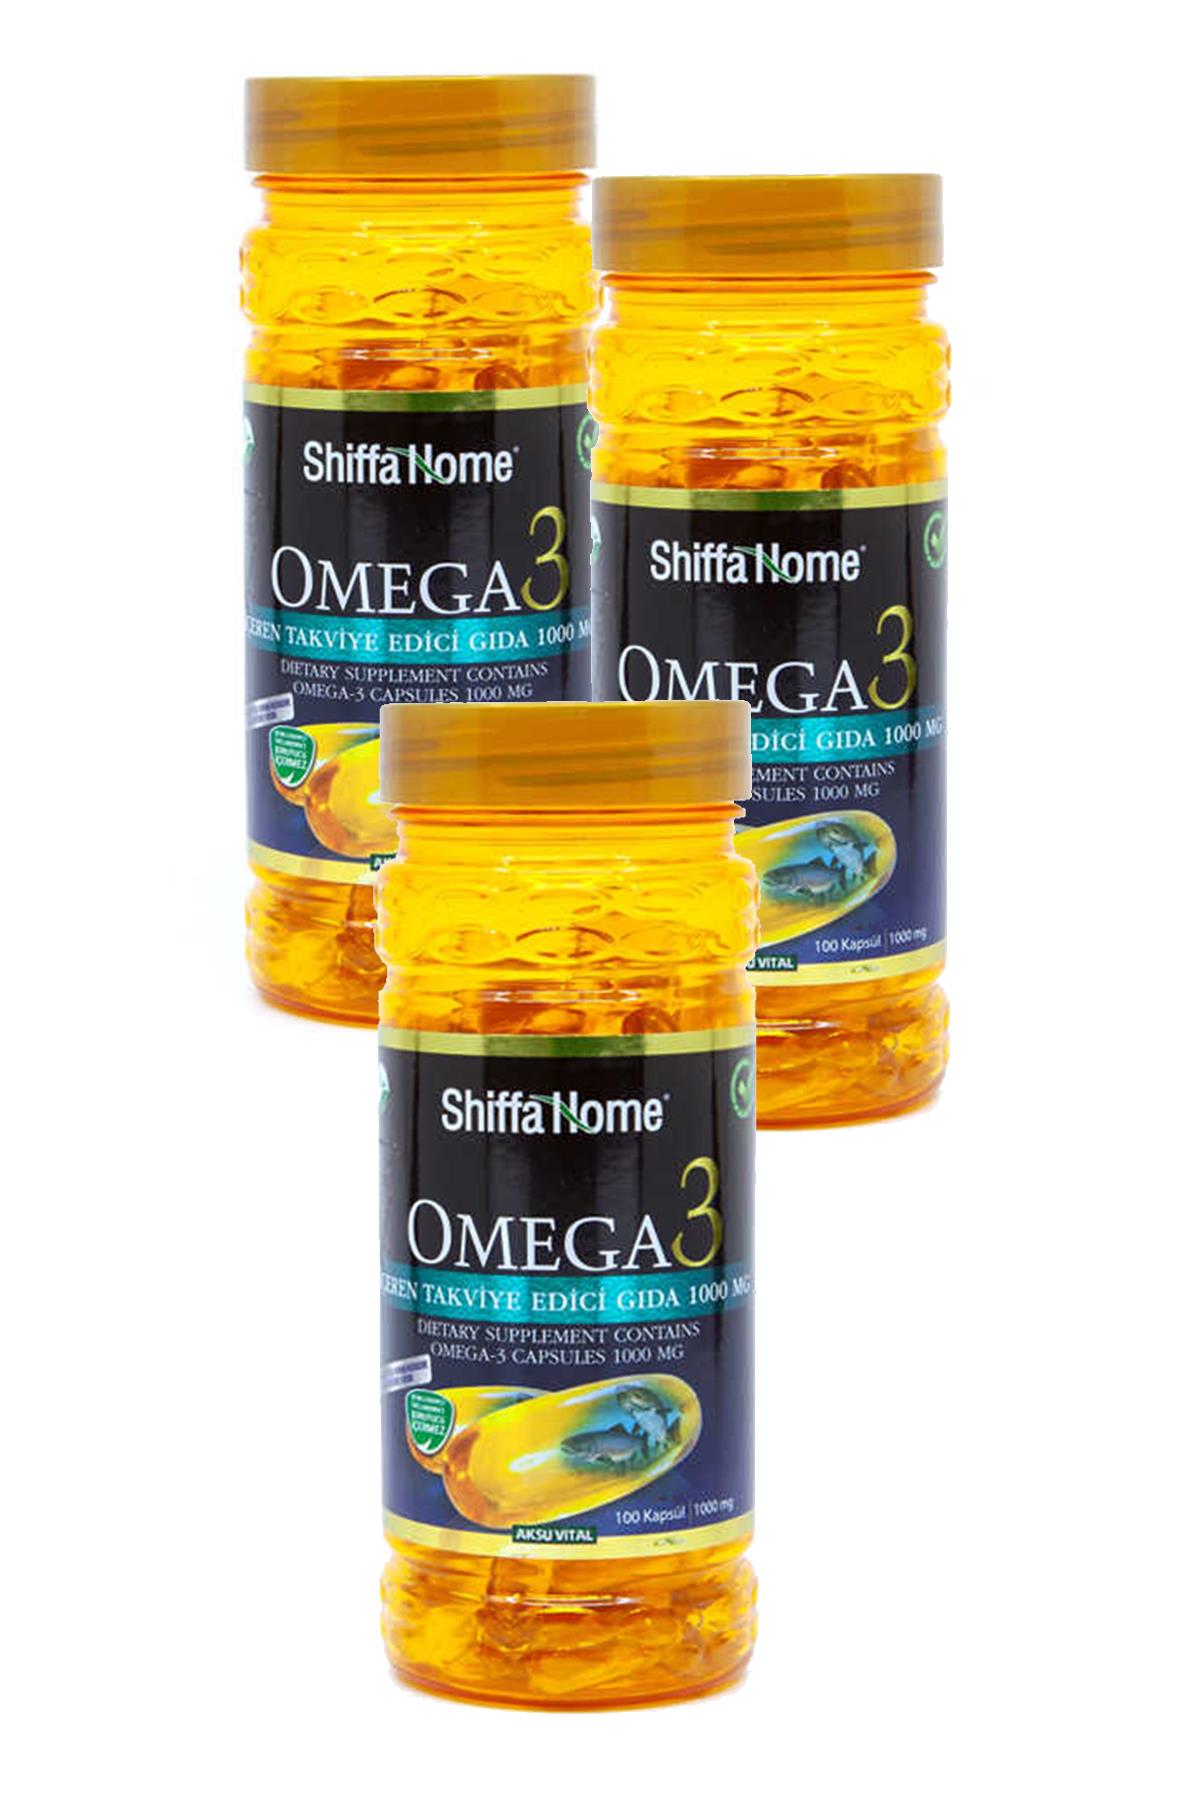 2 Kutu Aksu Vital Shiffa Home Omega 3 Balık Yağı